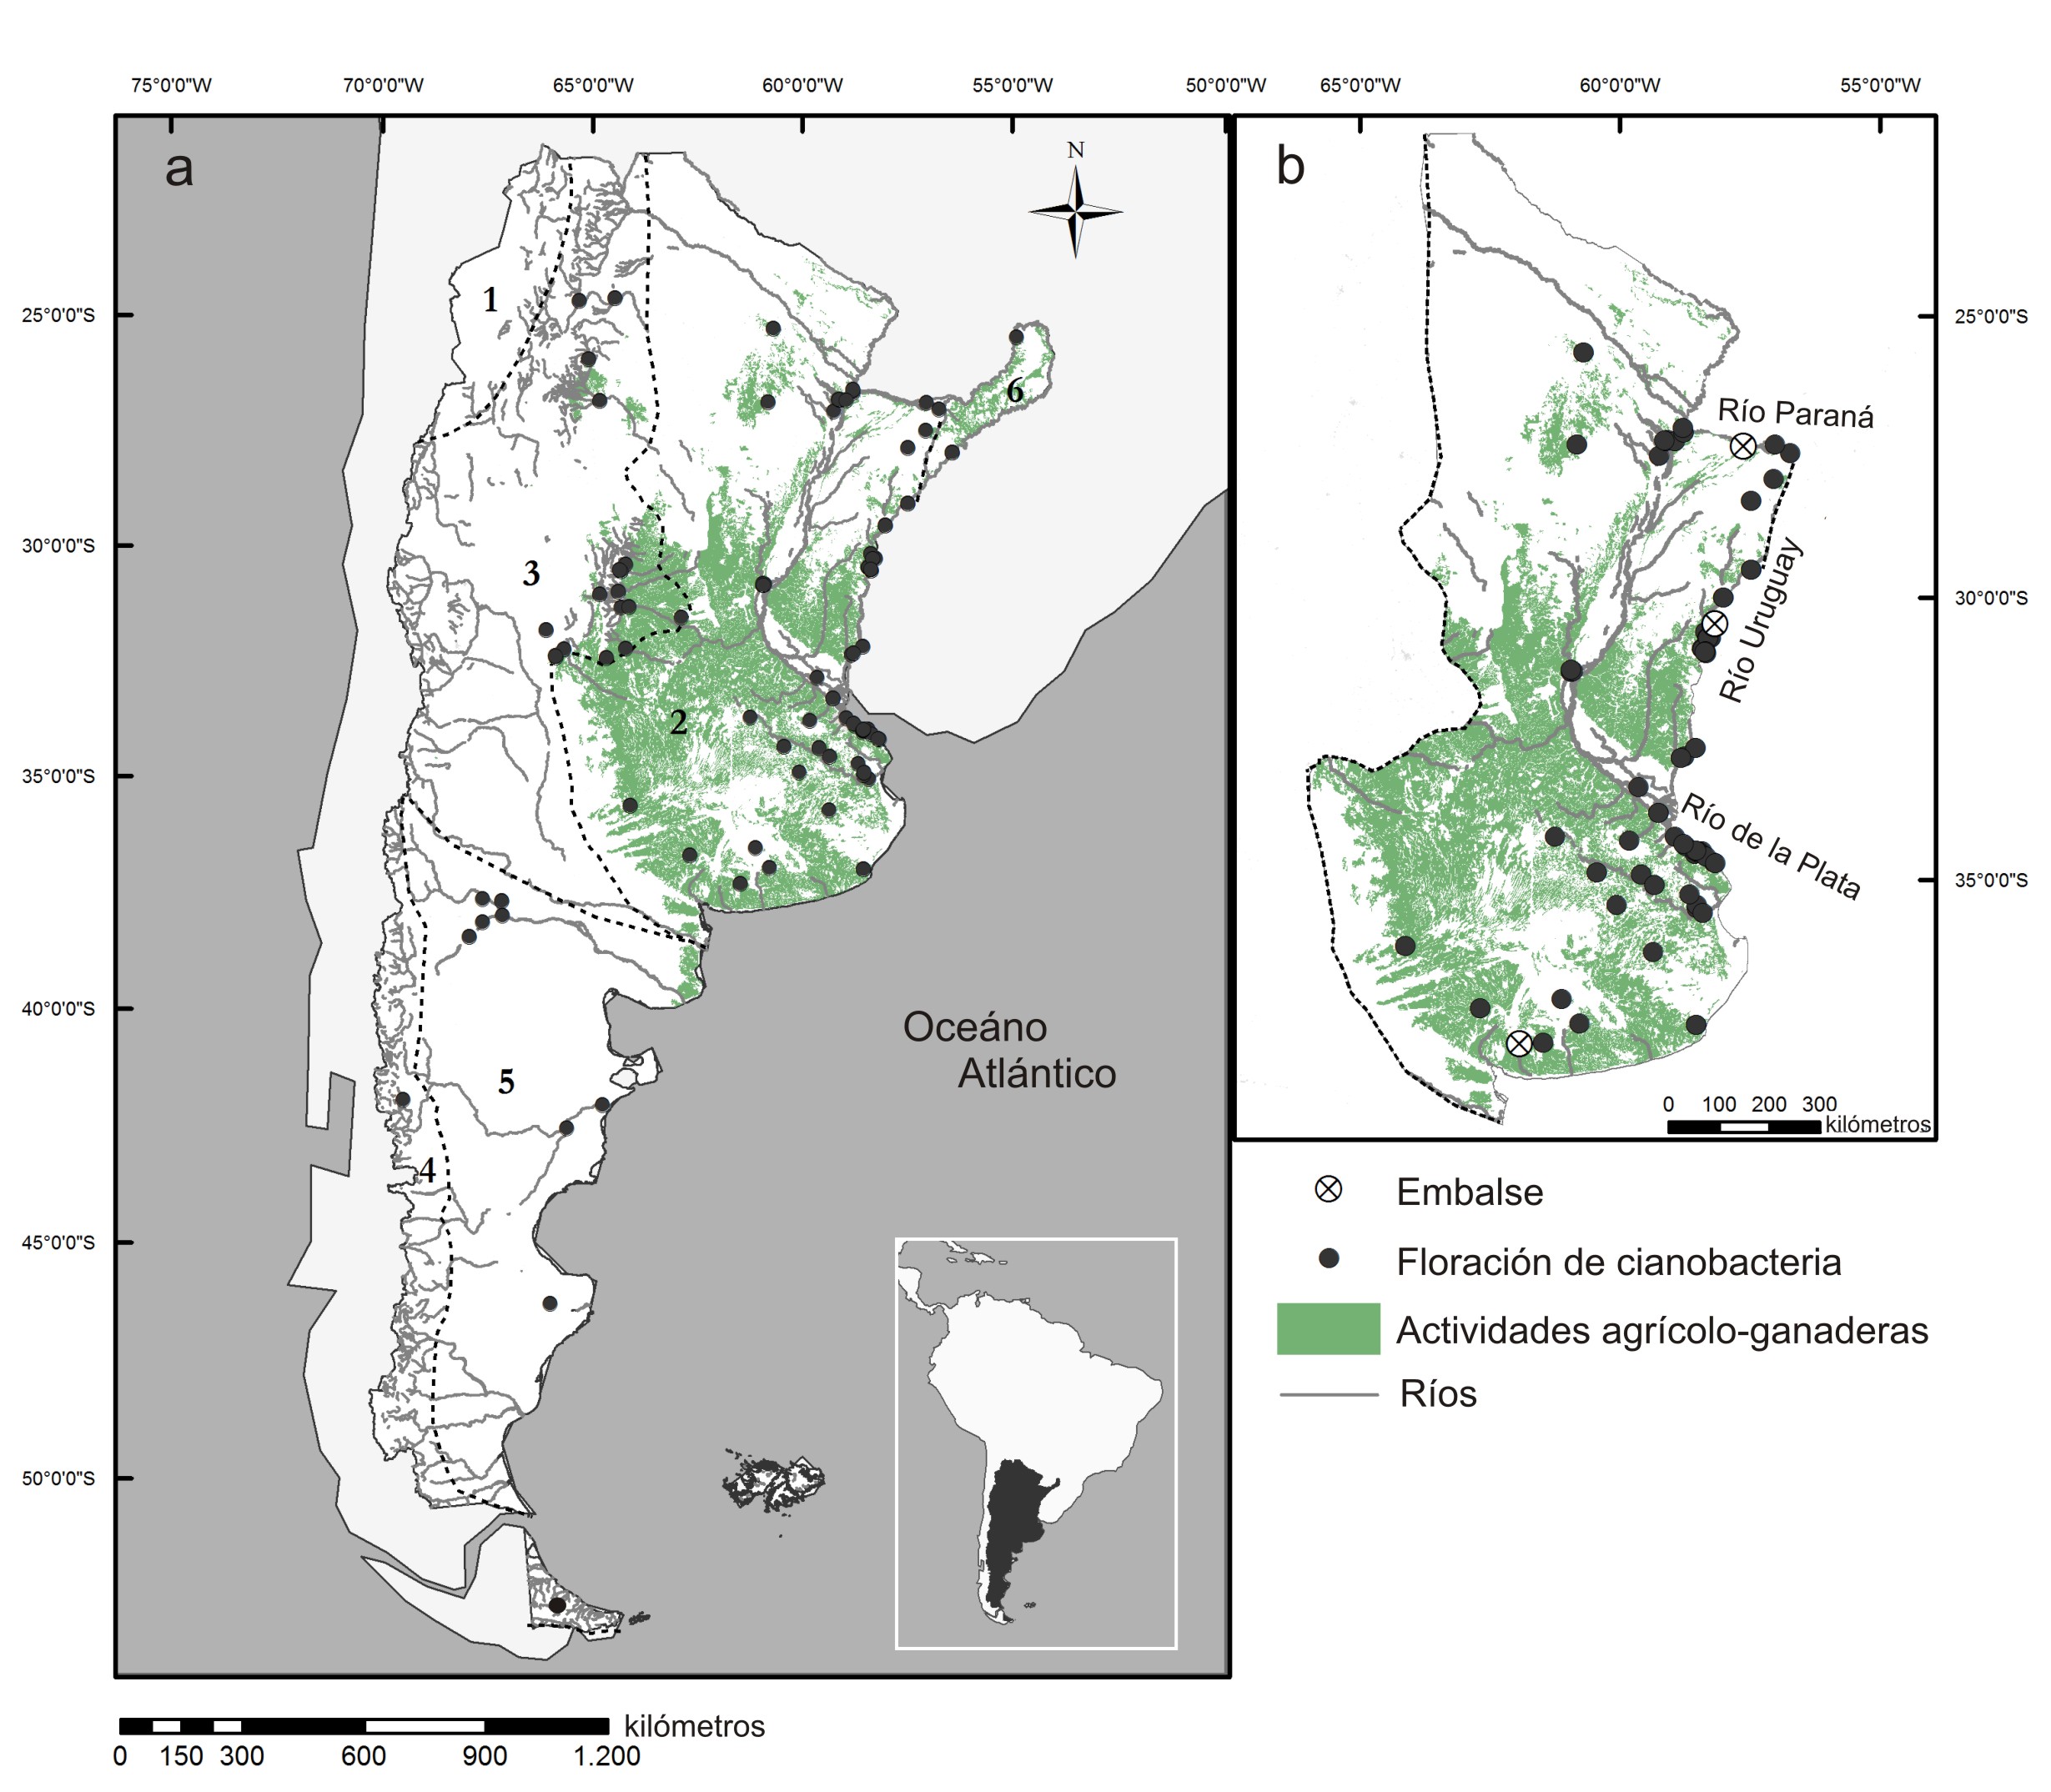 Floraciones de cianobacterias toxígenas en Argentina, un potencial riesgo sanitario y ambiental